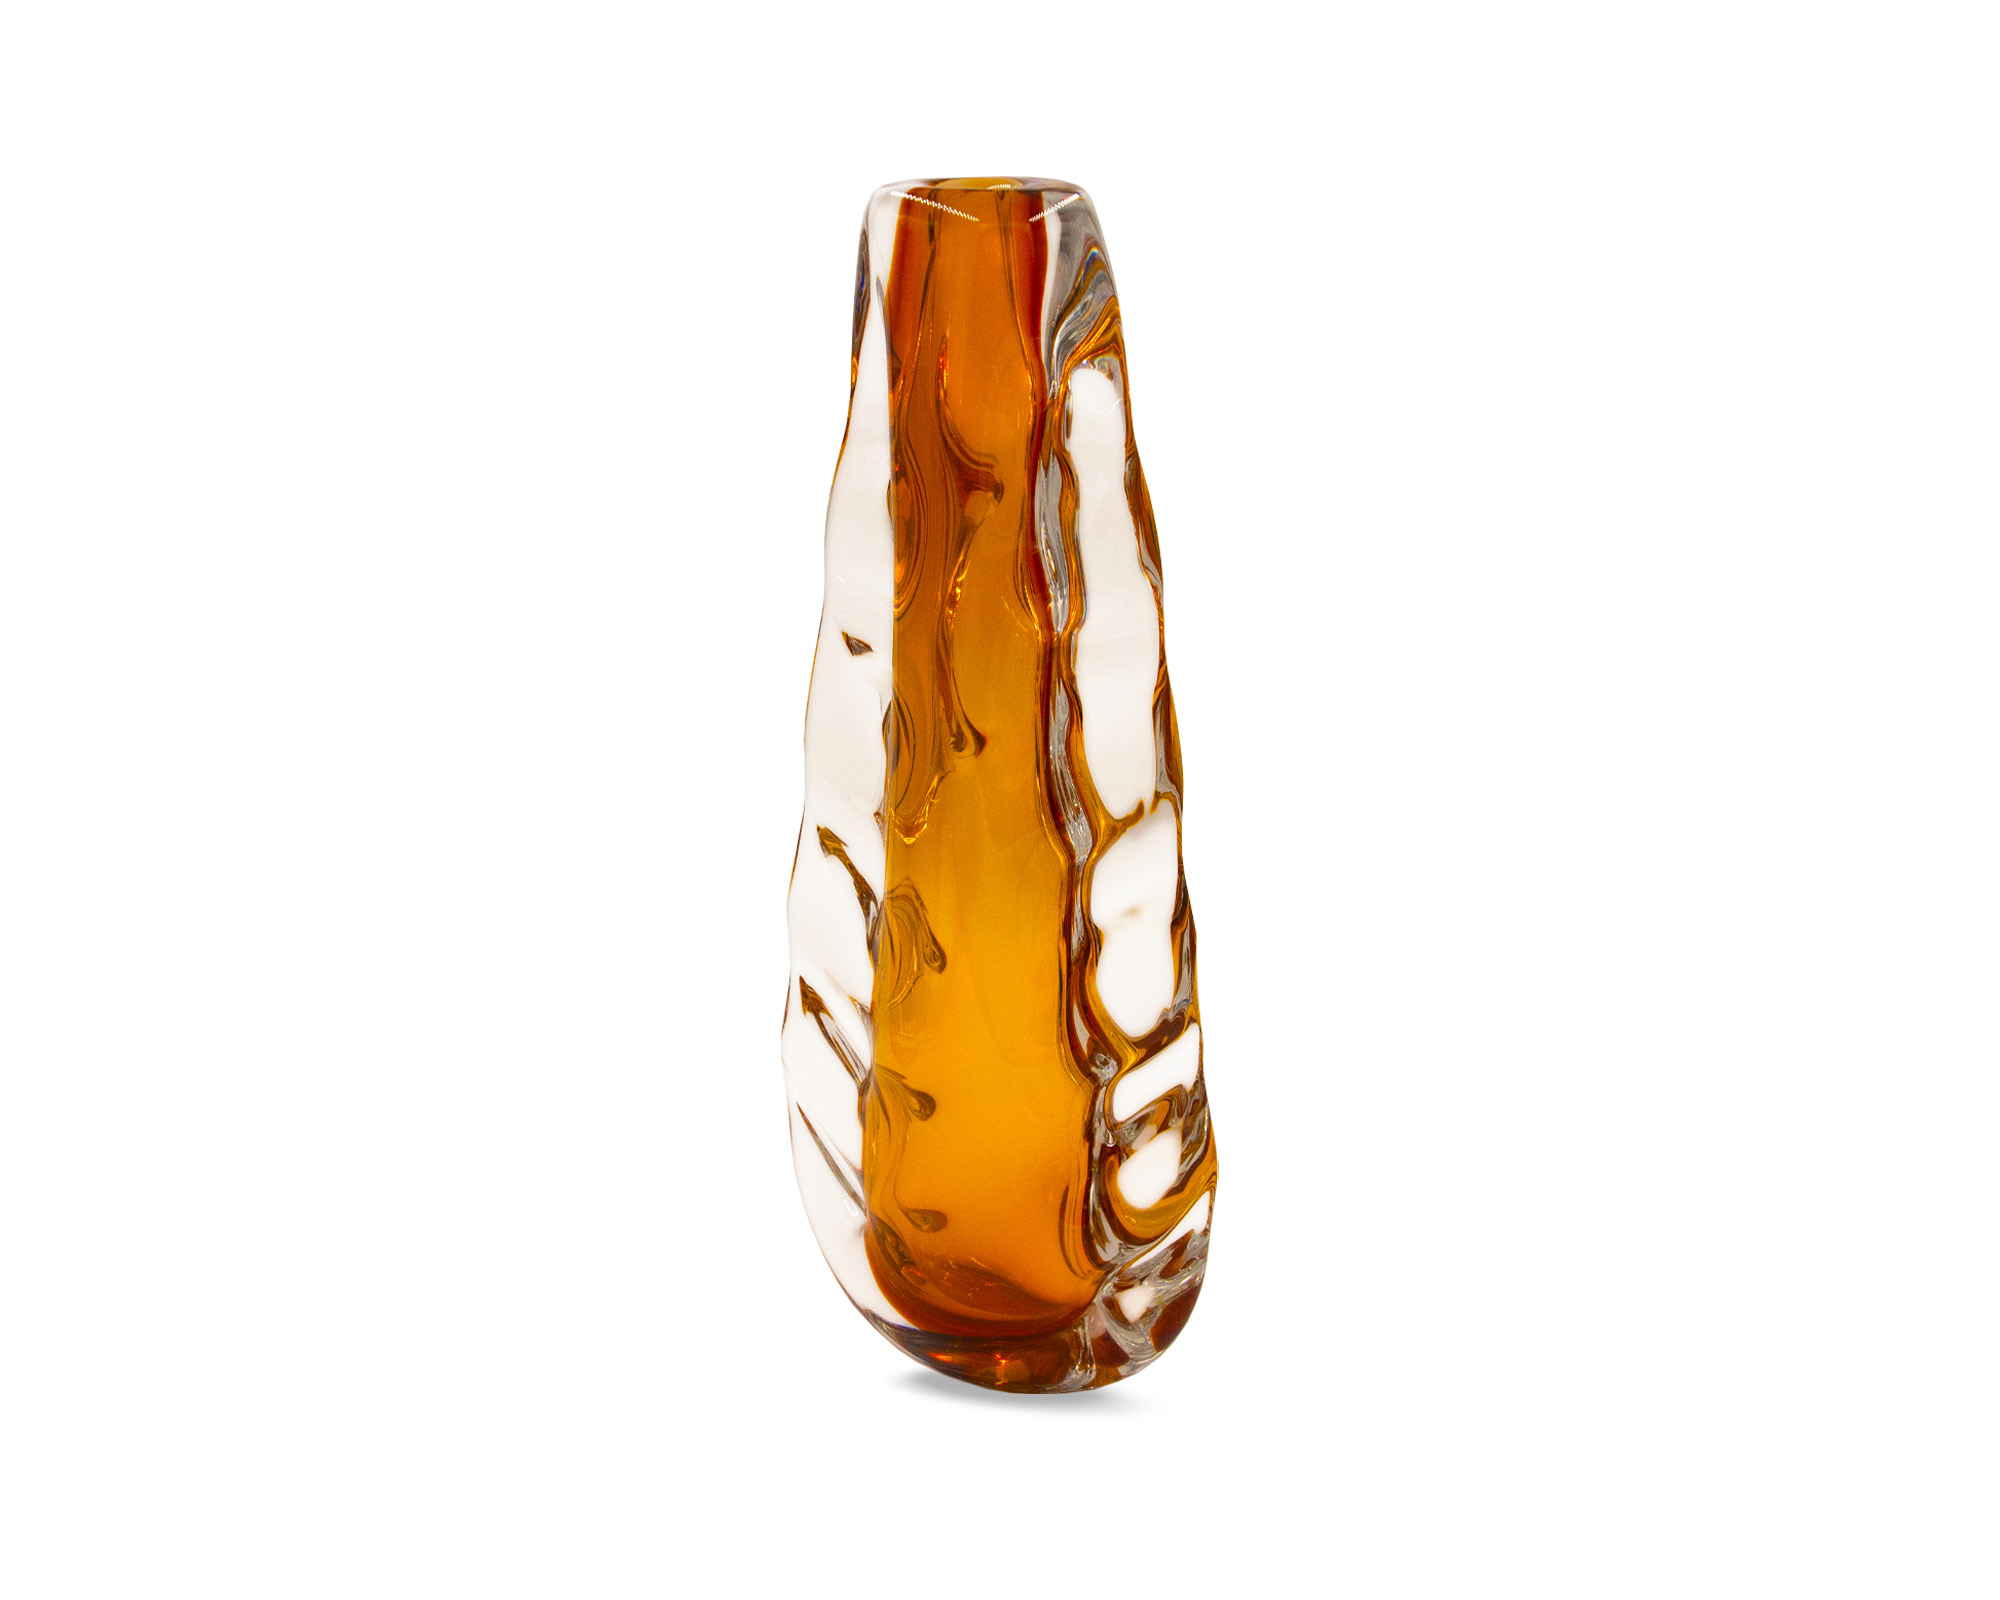 LE019-VS-051_L&E_Astell Amber Vase_Large_2000 x 1600_2